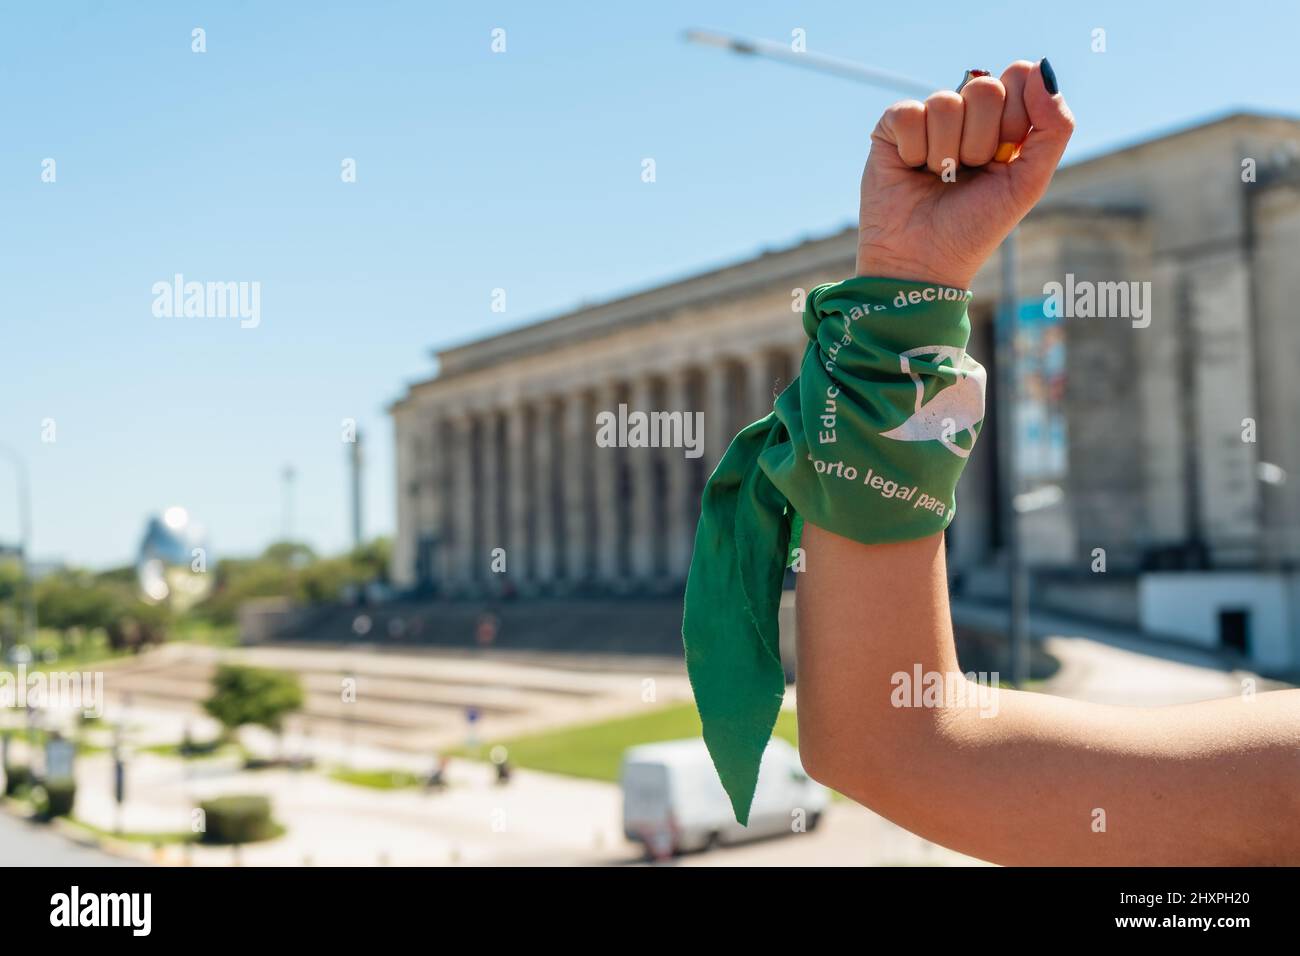 Faust mit einem grünen Schal, der den feministischen Kampf für Gleichheit und legale Abtreibung in Lateinamerika symbolisiert. Legale, sichere und kostenlose Abtreibung. Konzept von Stockfoto